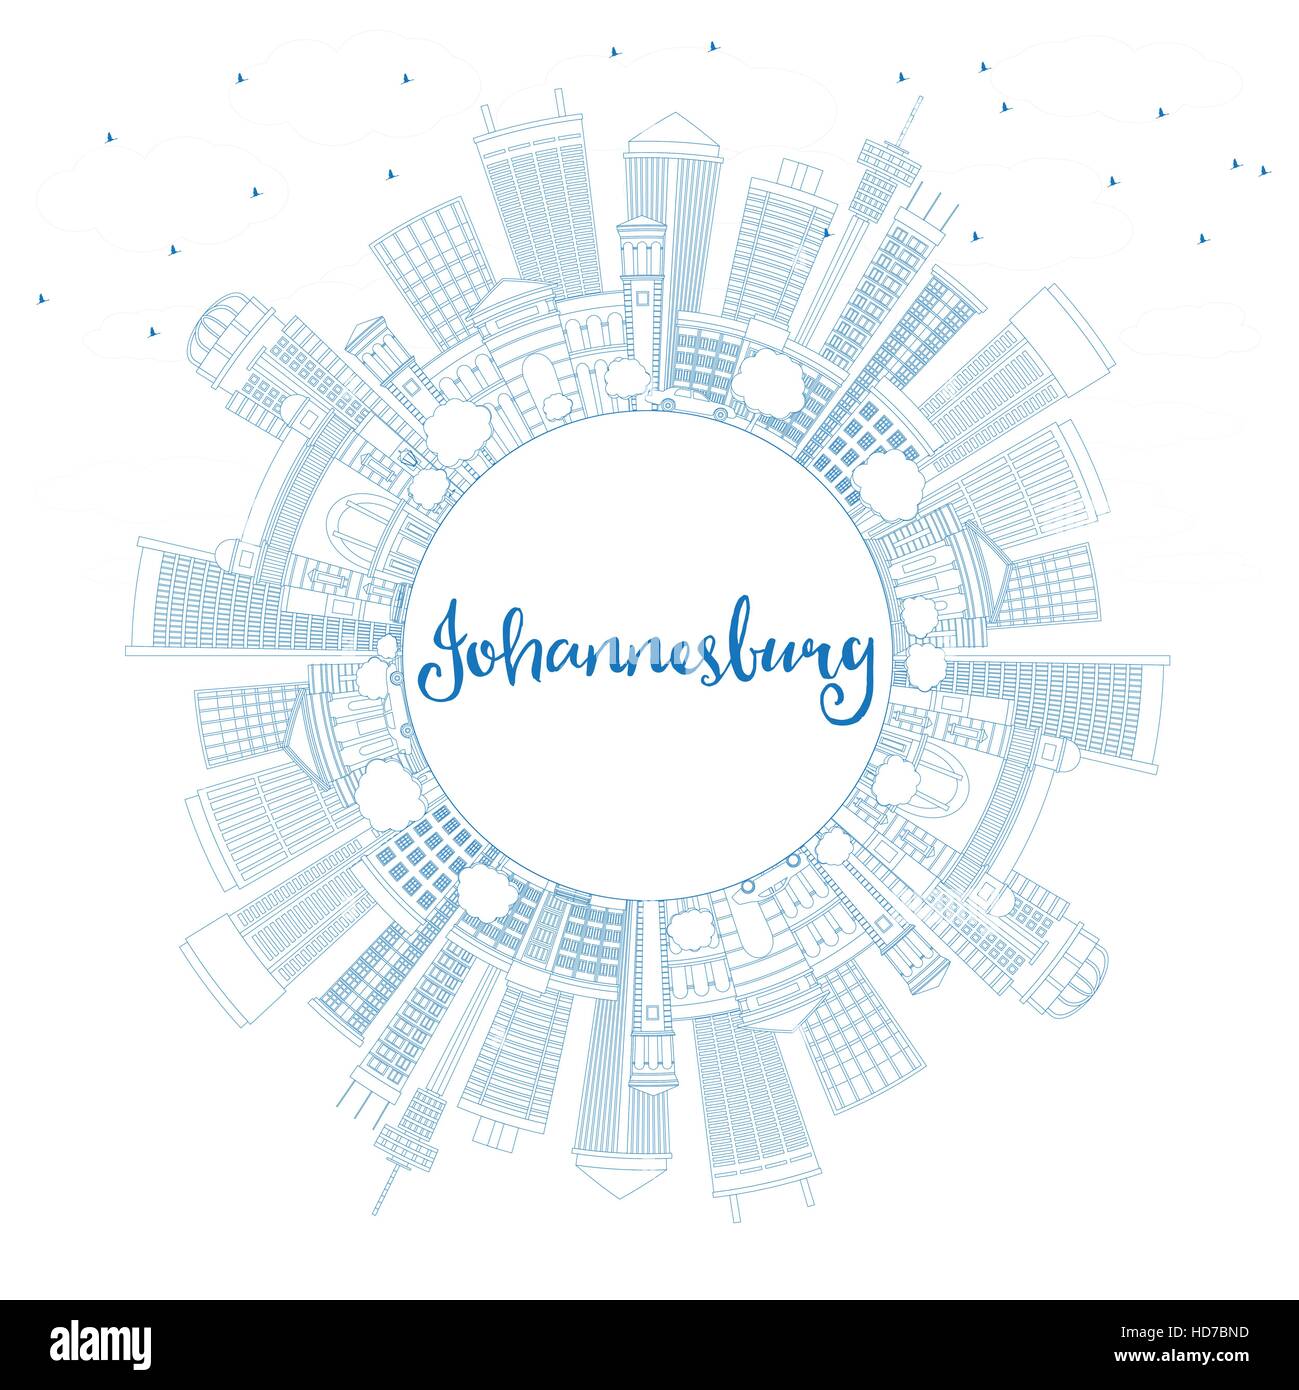 Umriss Johannesburg Skyline mit blauen Gebäuden und Textfreiraum. Vektor-Illustration. Geschäftsreisen und Tourismus-Konzept mit Johannesburg Stock Vektor